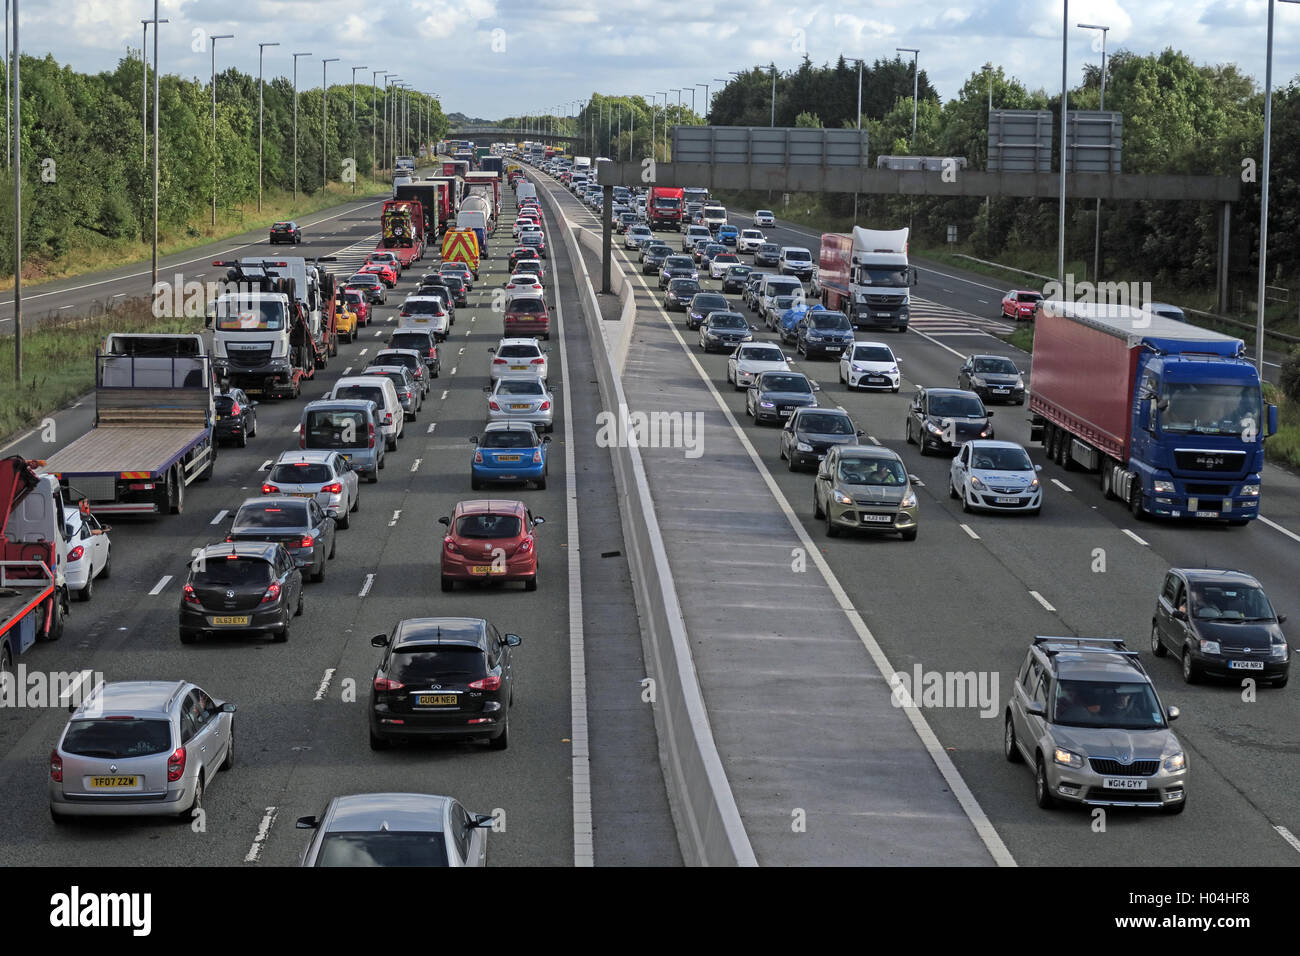 La congestion du trafic, embouteillages sur l'autoroute M6, Warrington, Cheshire, Angleterre, Royaume-Uni Banque D'Images